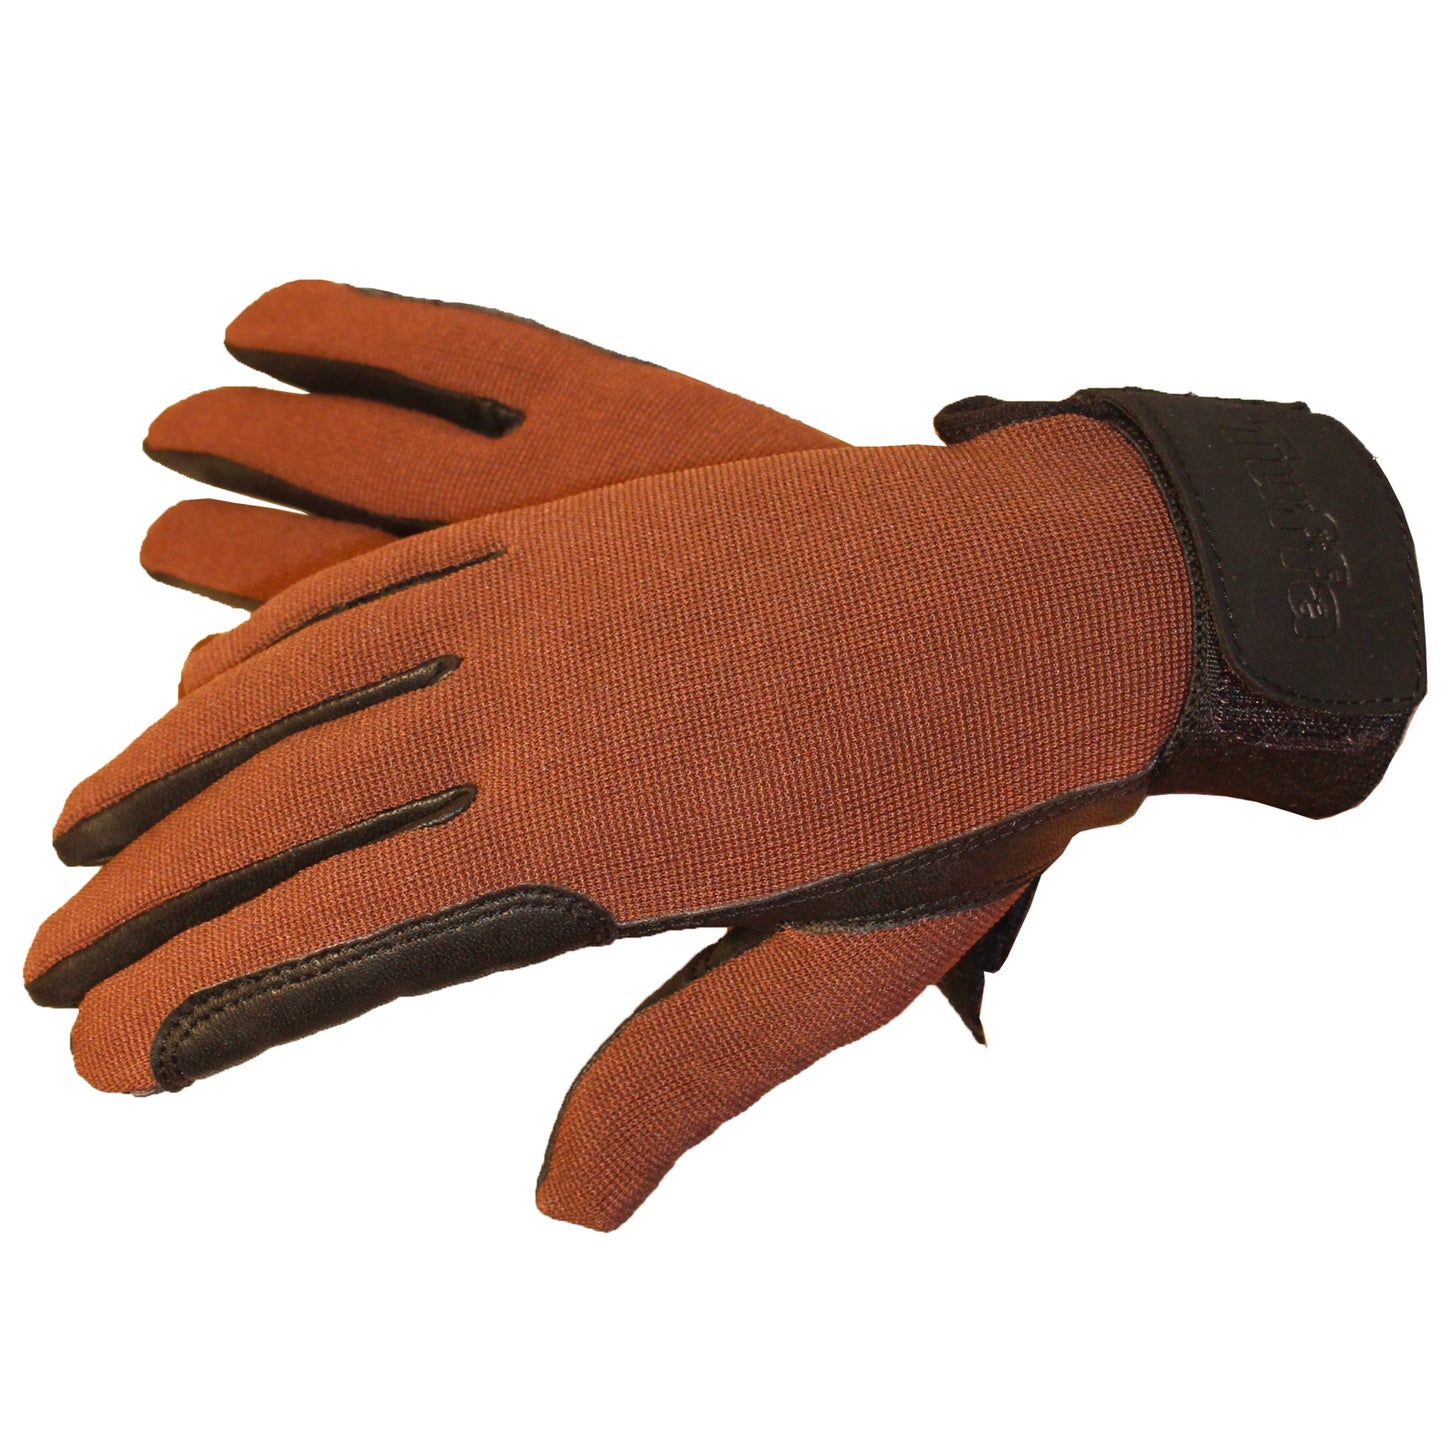 Hingham Children's Riding Gloves